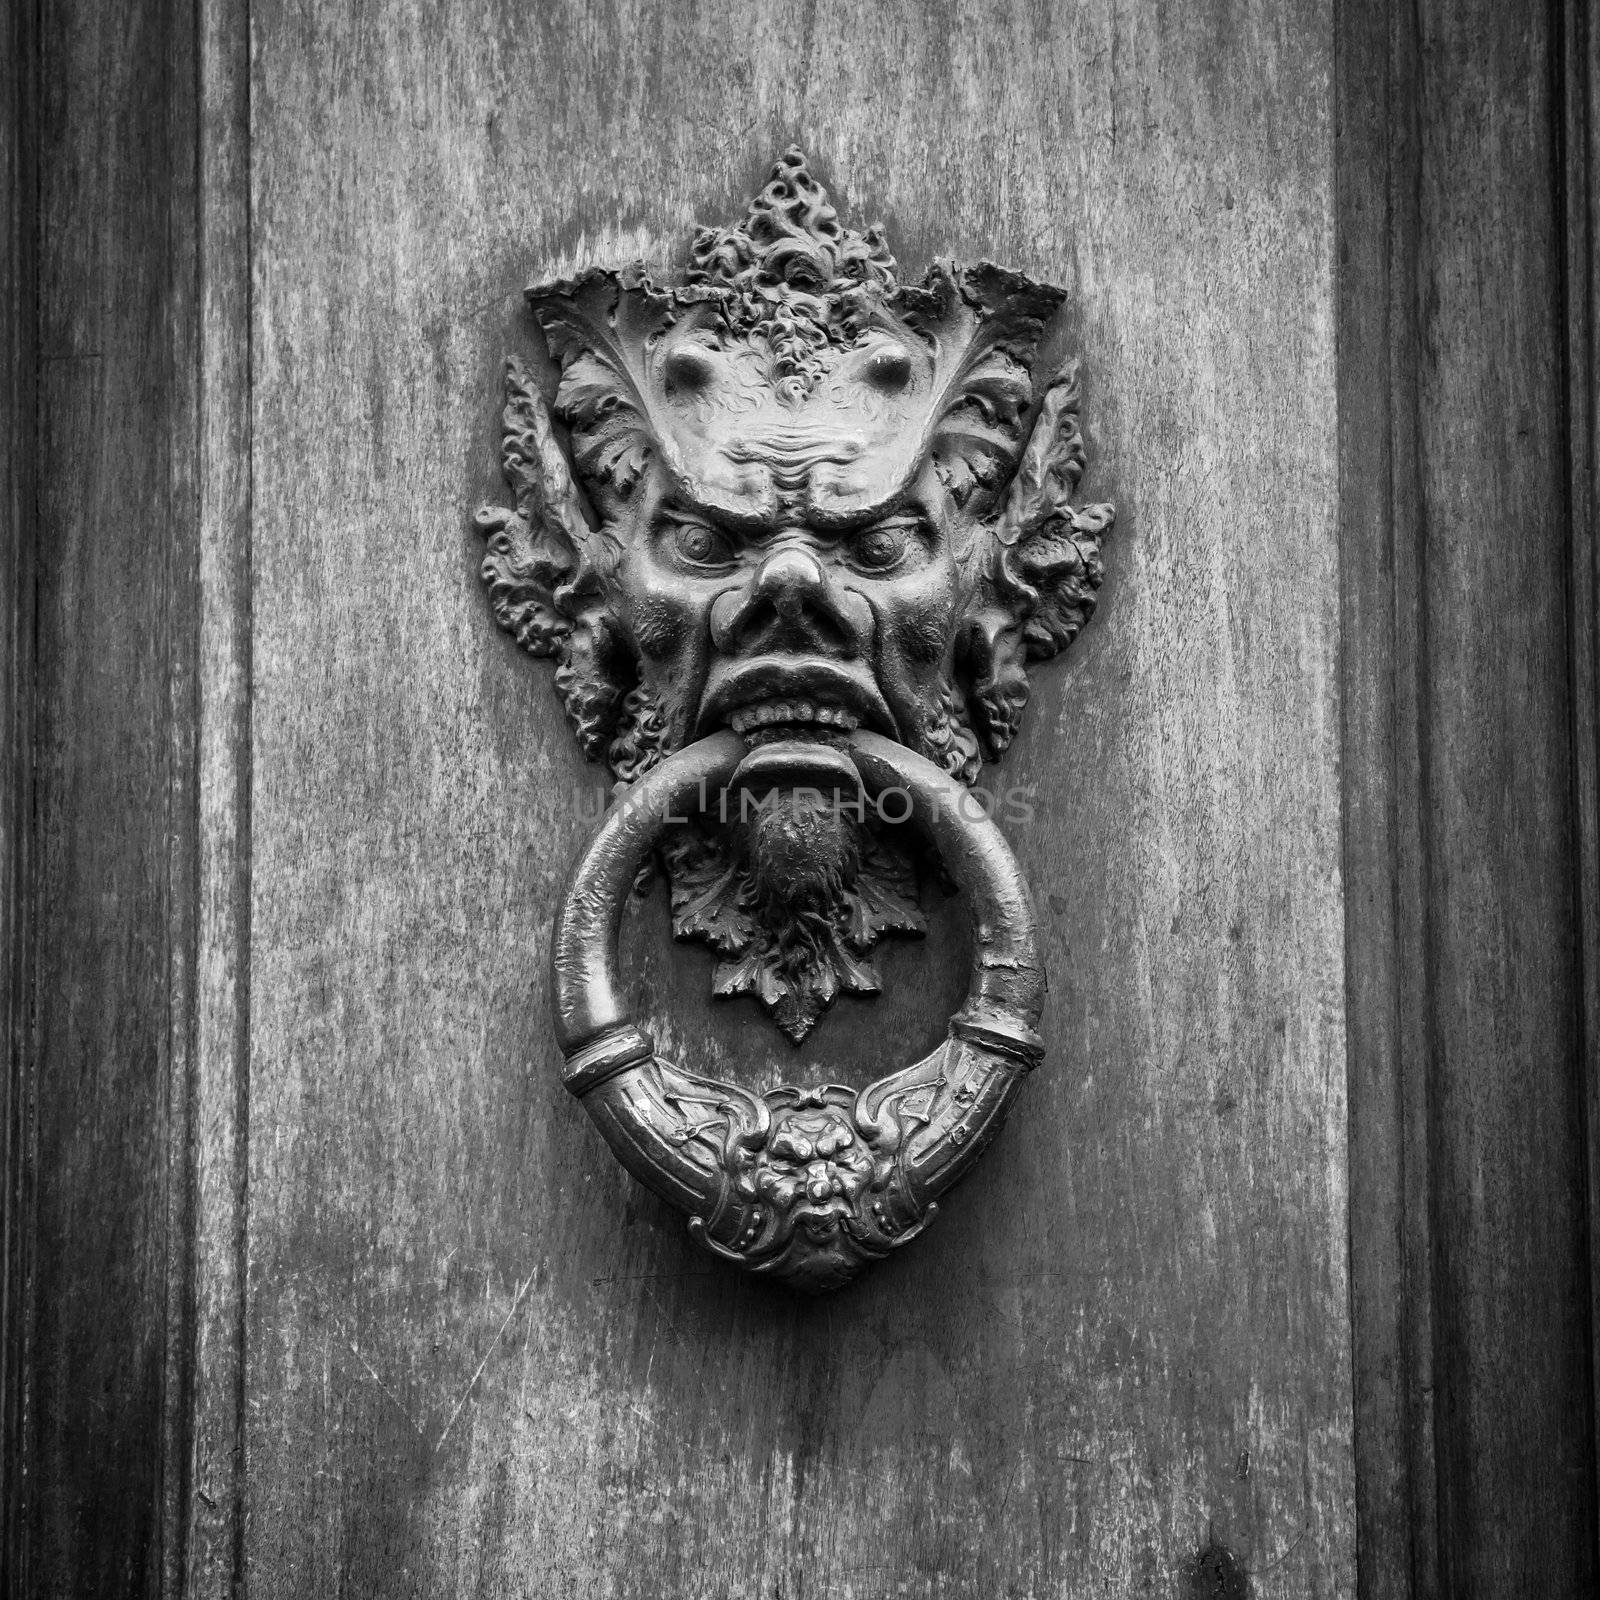 Door knoker on an old wodden door in Tuscany - Italy